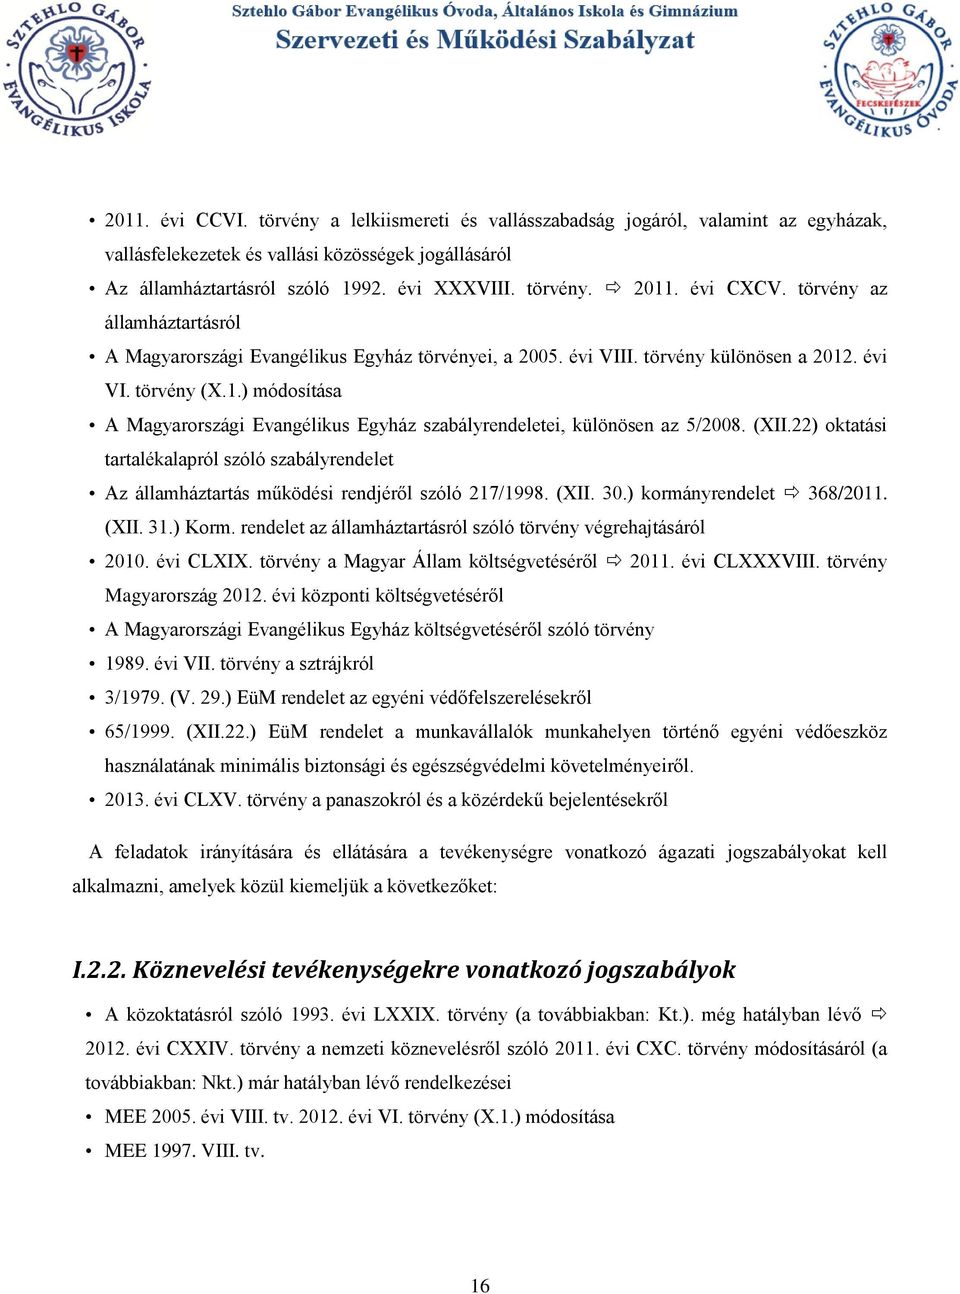 . évi VI. törvény (X.1.) módosítása A Magyarországi Evangélikus Egyház szabályrendeletei, különösen az 5/2008. (XII.